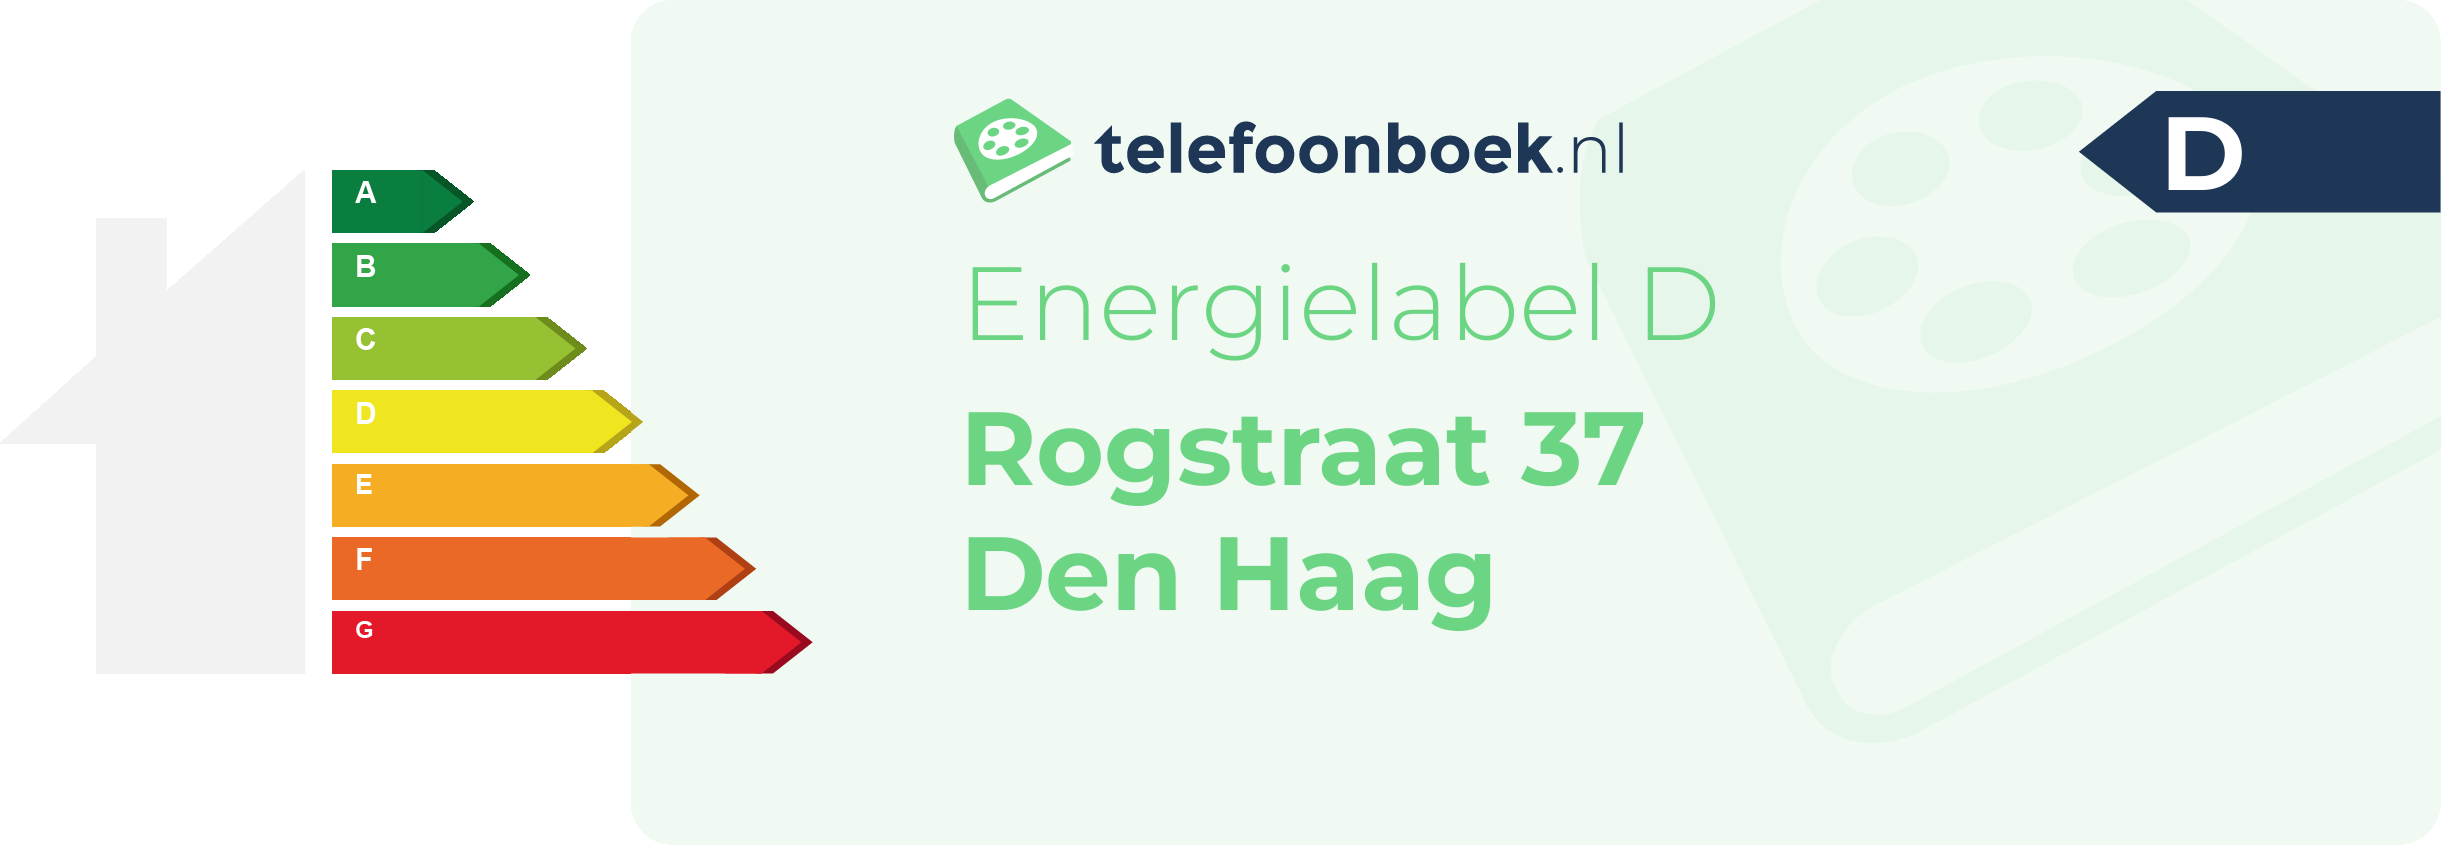 Energielabel Rogstraat 37 Den Haag